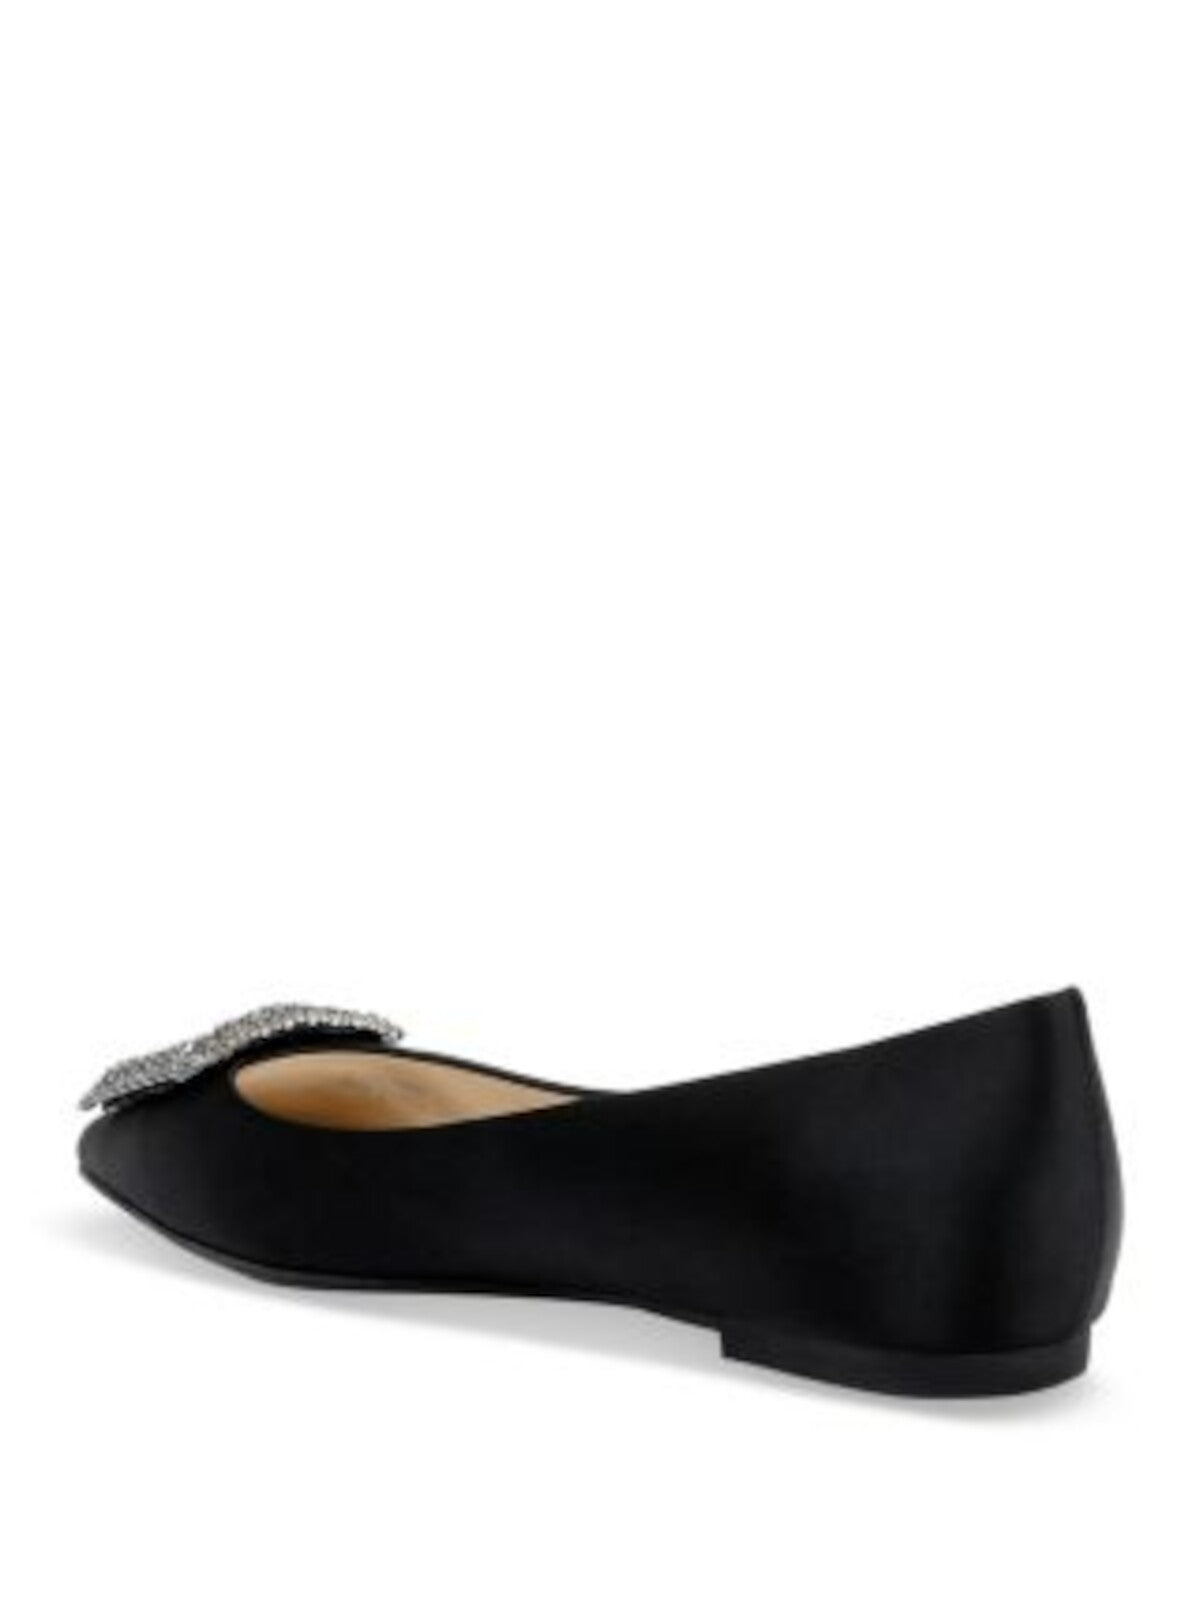 BADGLEY MISCHKA Womens Black Embellished Hardware Rhinestone Padded Emerie Pointed Toe Slip On Flats Shoes 7